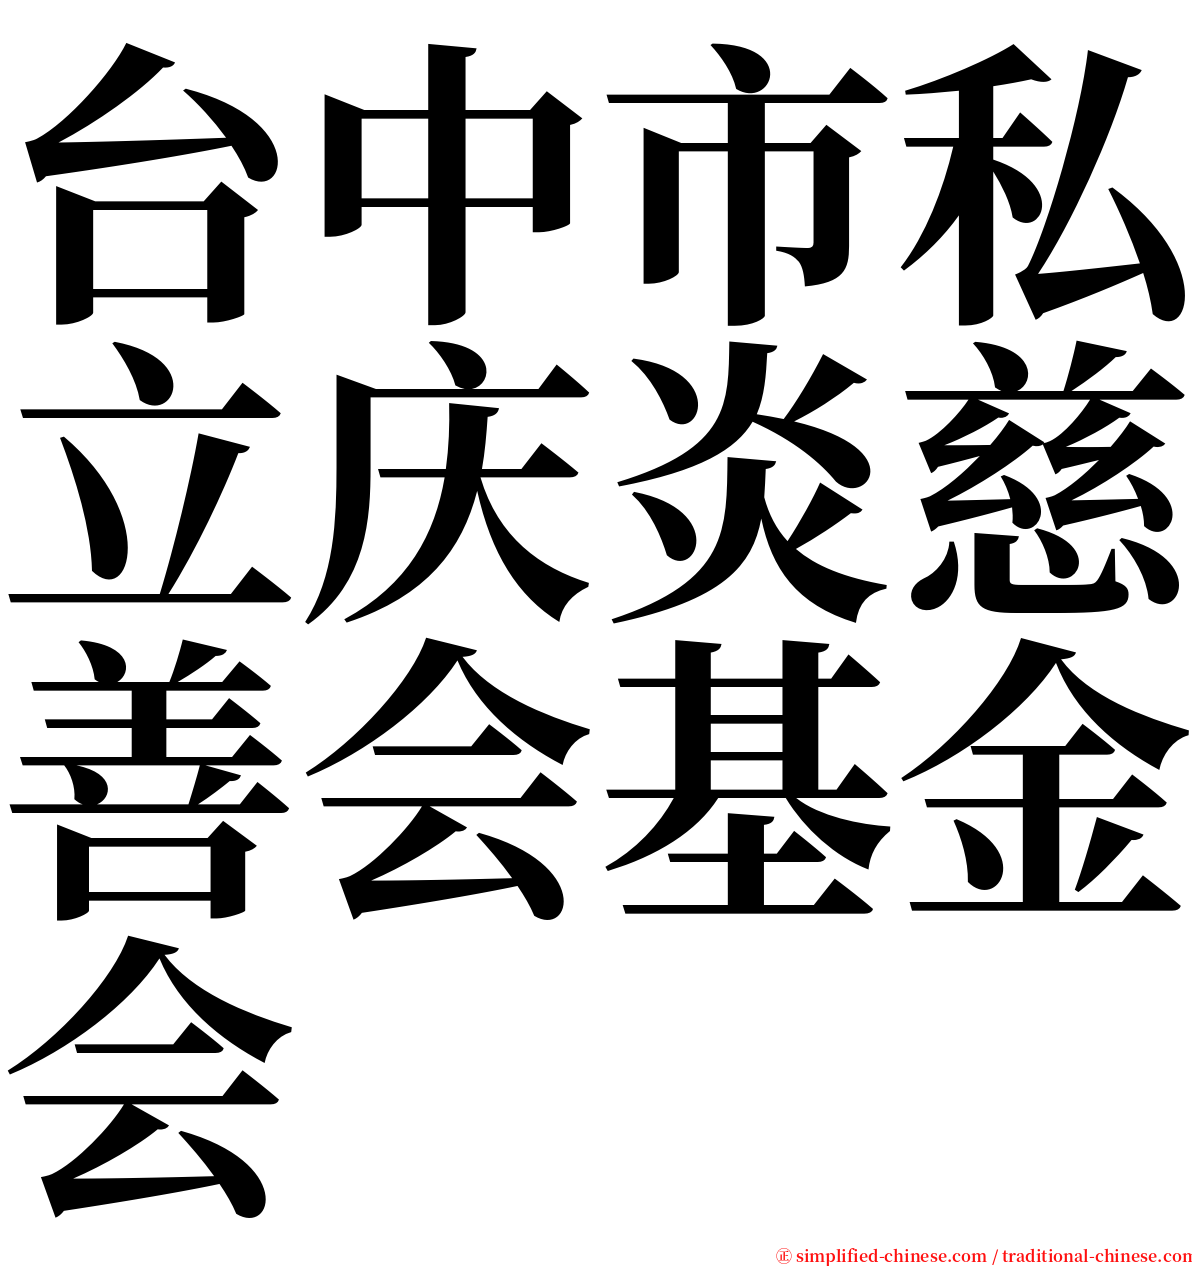 台中市私立庆炎慈善会基金会 serif font